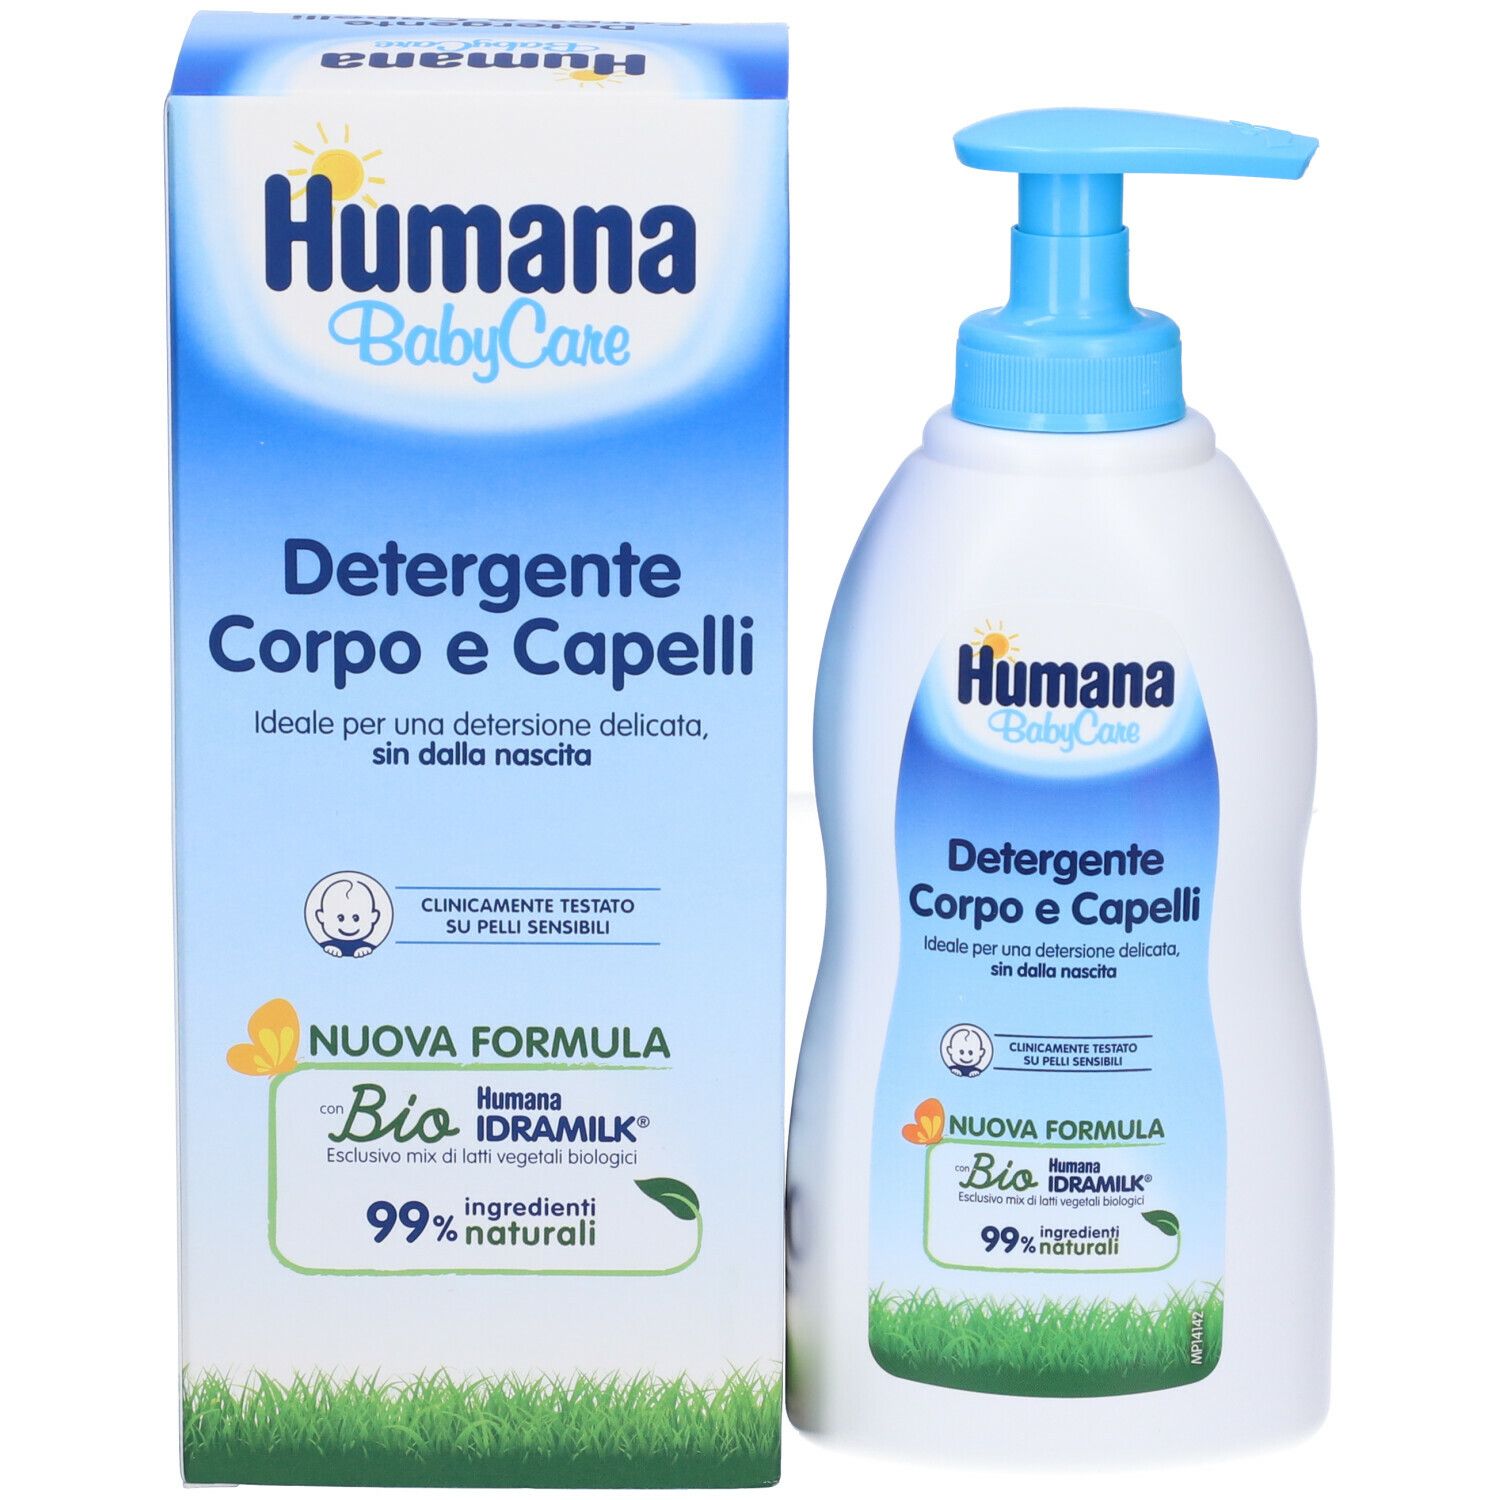 Humana BabyCare Detergente Corpo e Capelli